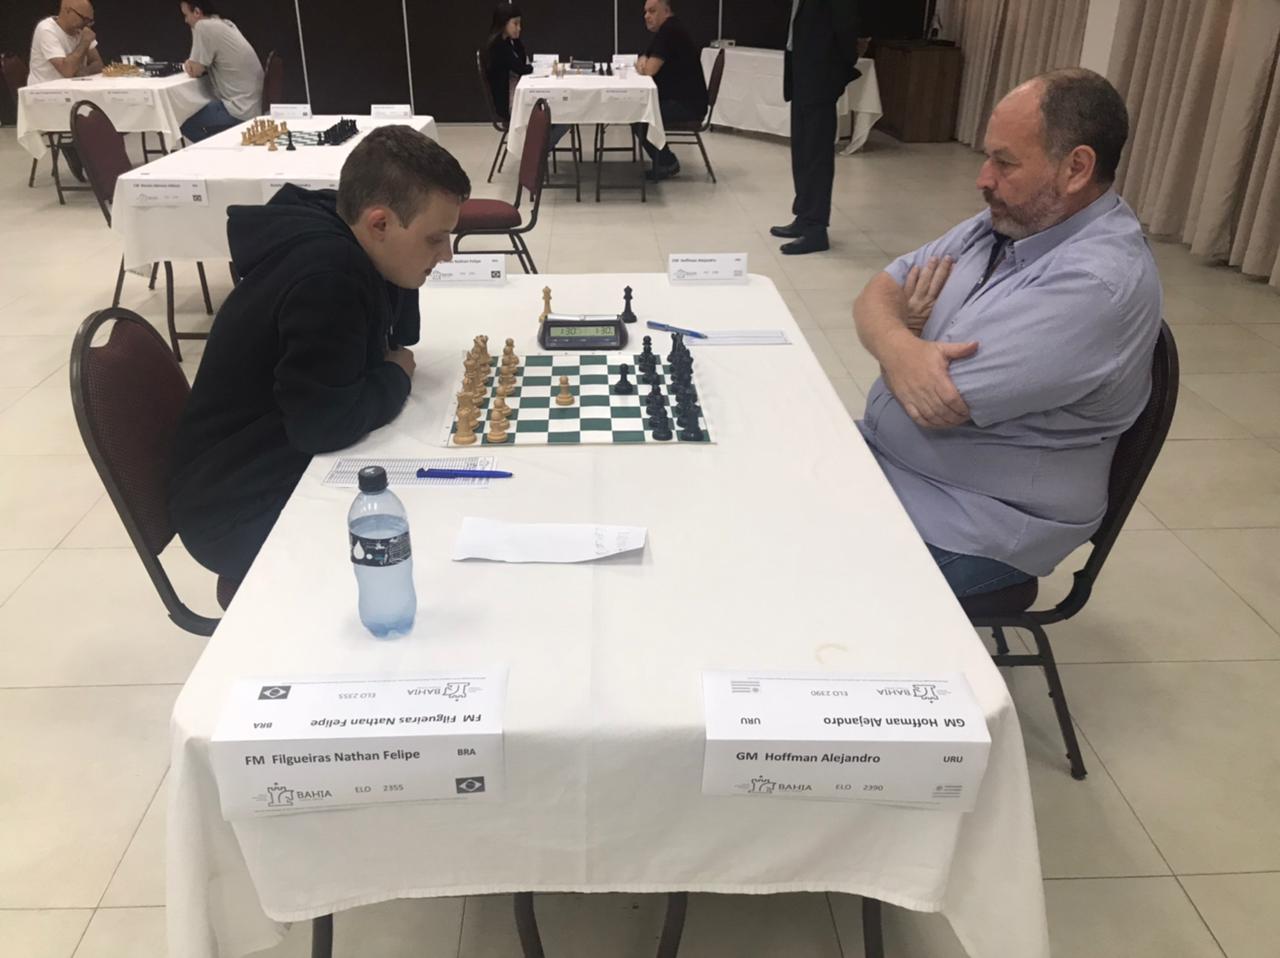 Entrevista Raffael Chess, O Centro de Excelência de Xadrez, com patrocínio  da Itaipu Binacional, apresentou no dia 26 de fevereiro de 2021 os painéis  de discussão com a temática